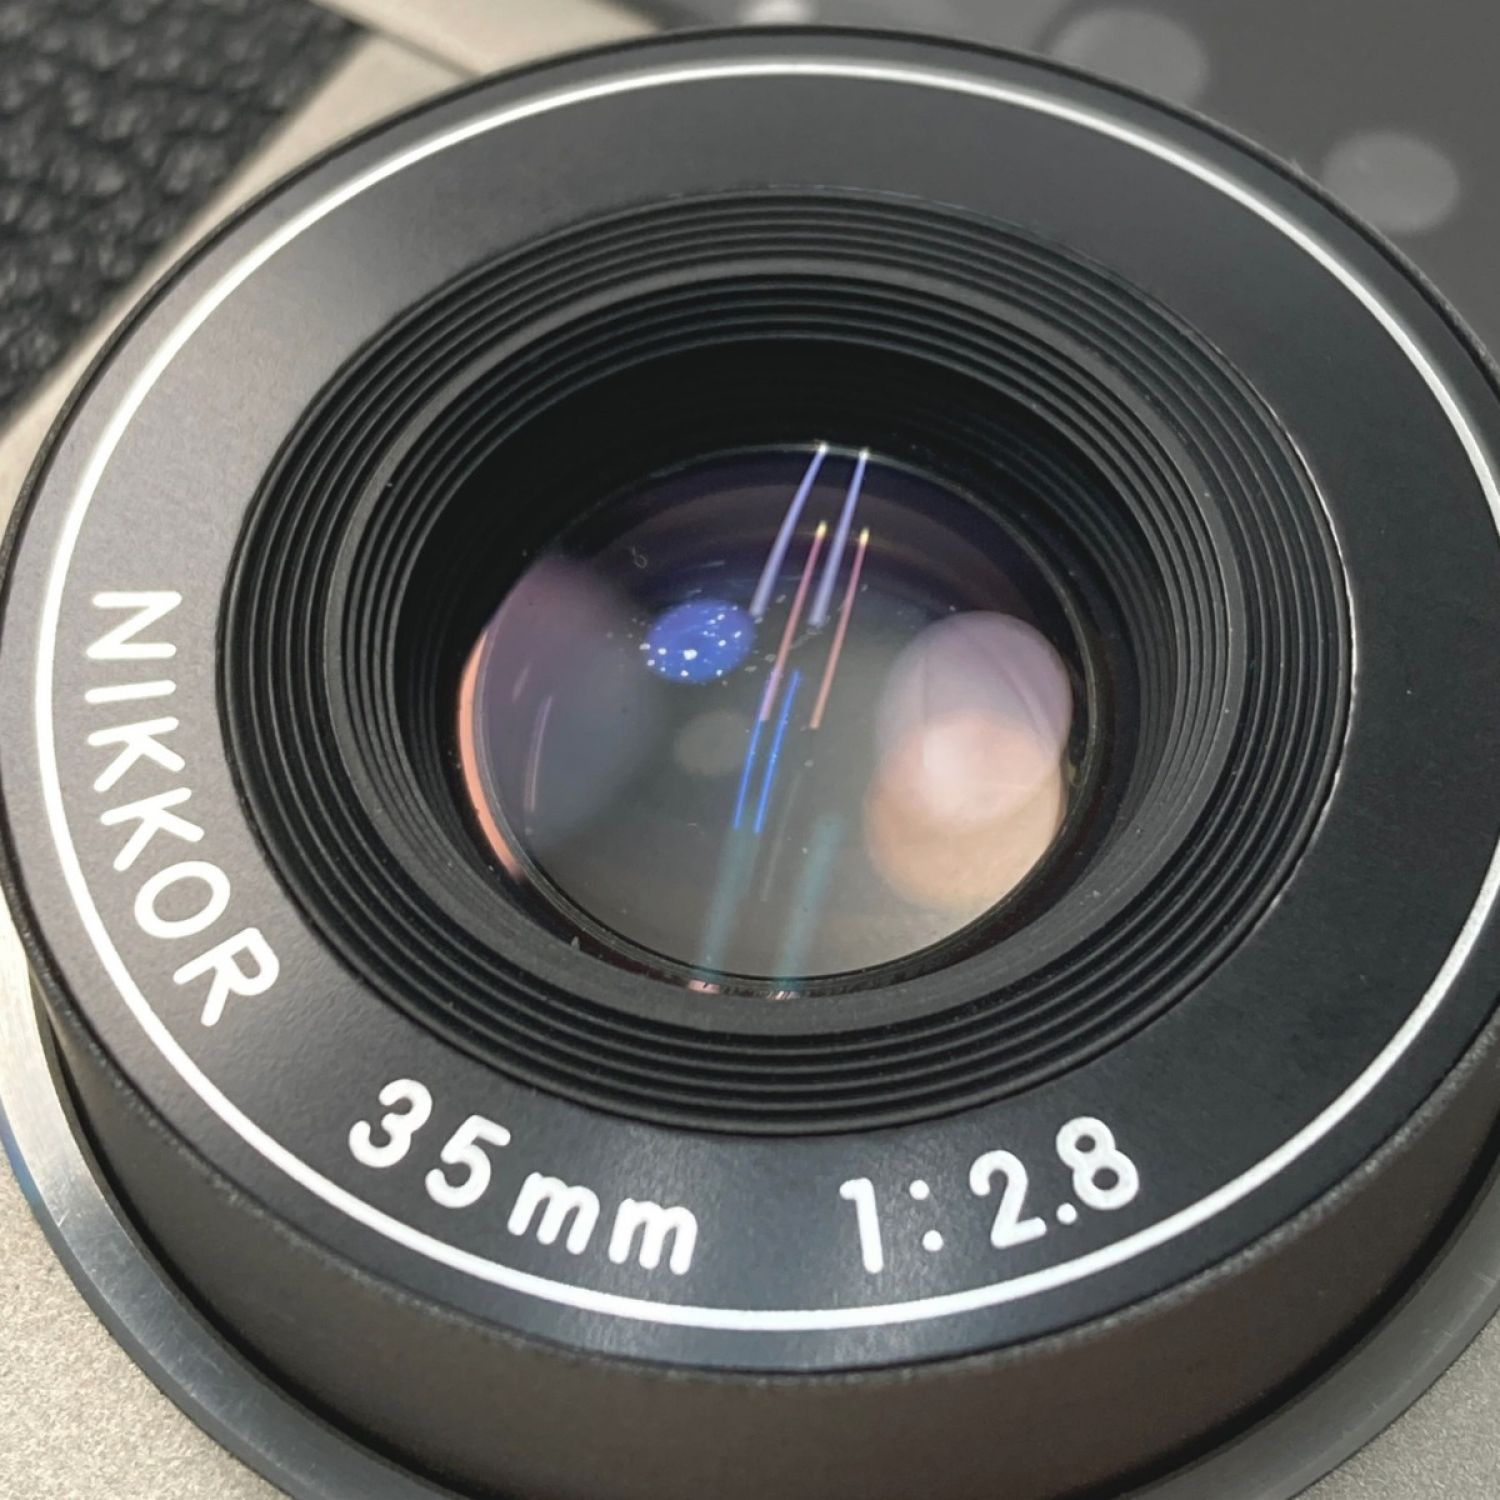 中古】 Nikon ニコン 35Ti コンパクト フィルムカメラ ケース付き 35Ti